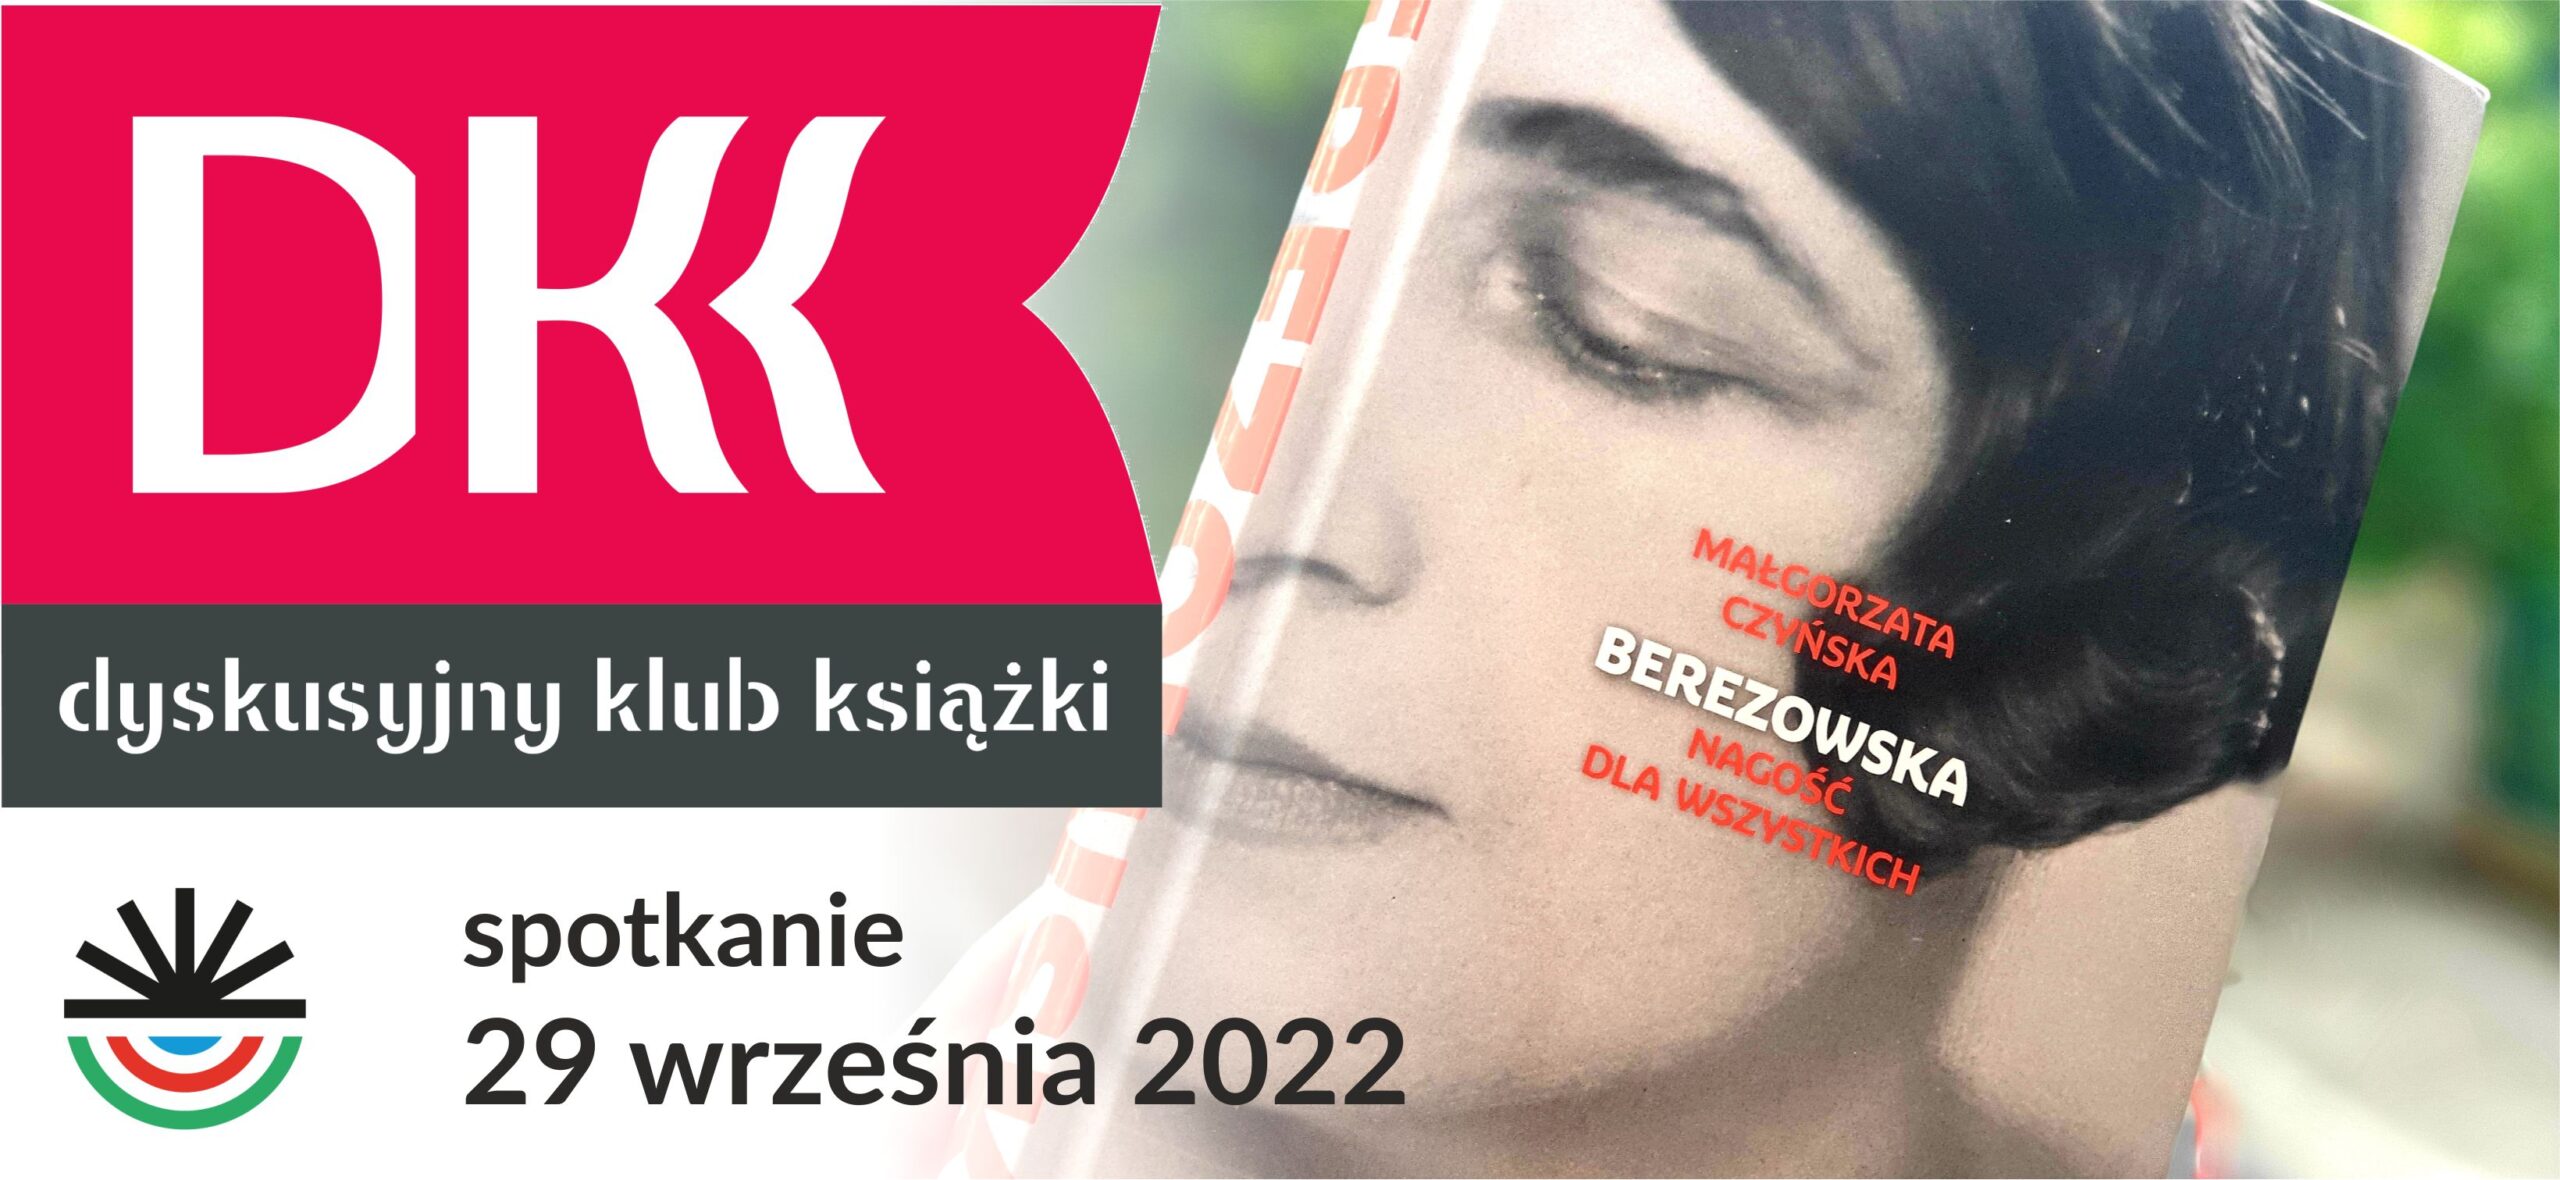 z lewej różowoczarne logo DKK oraz napis: spotkanie 29 września 2022; z prawej zdjęcie książki z twarzą kobiety na okładce